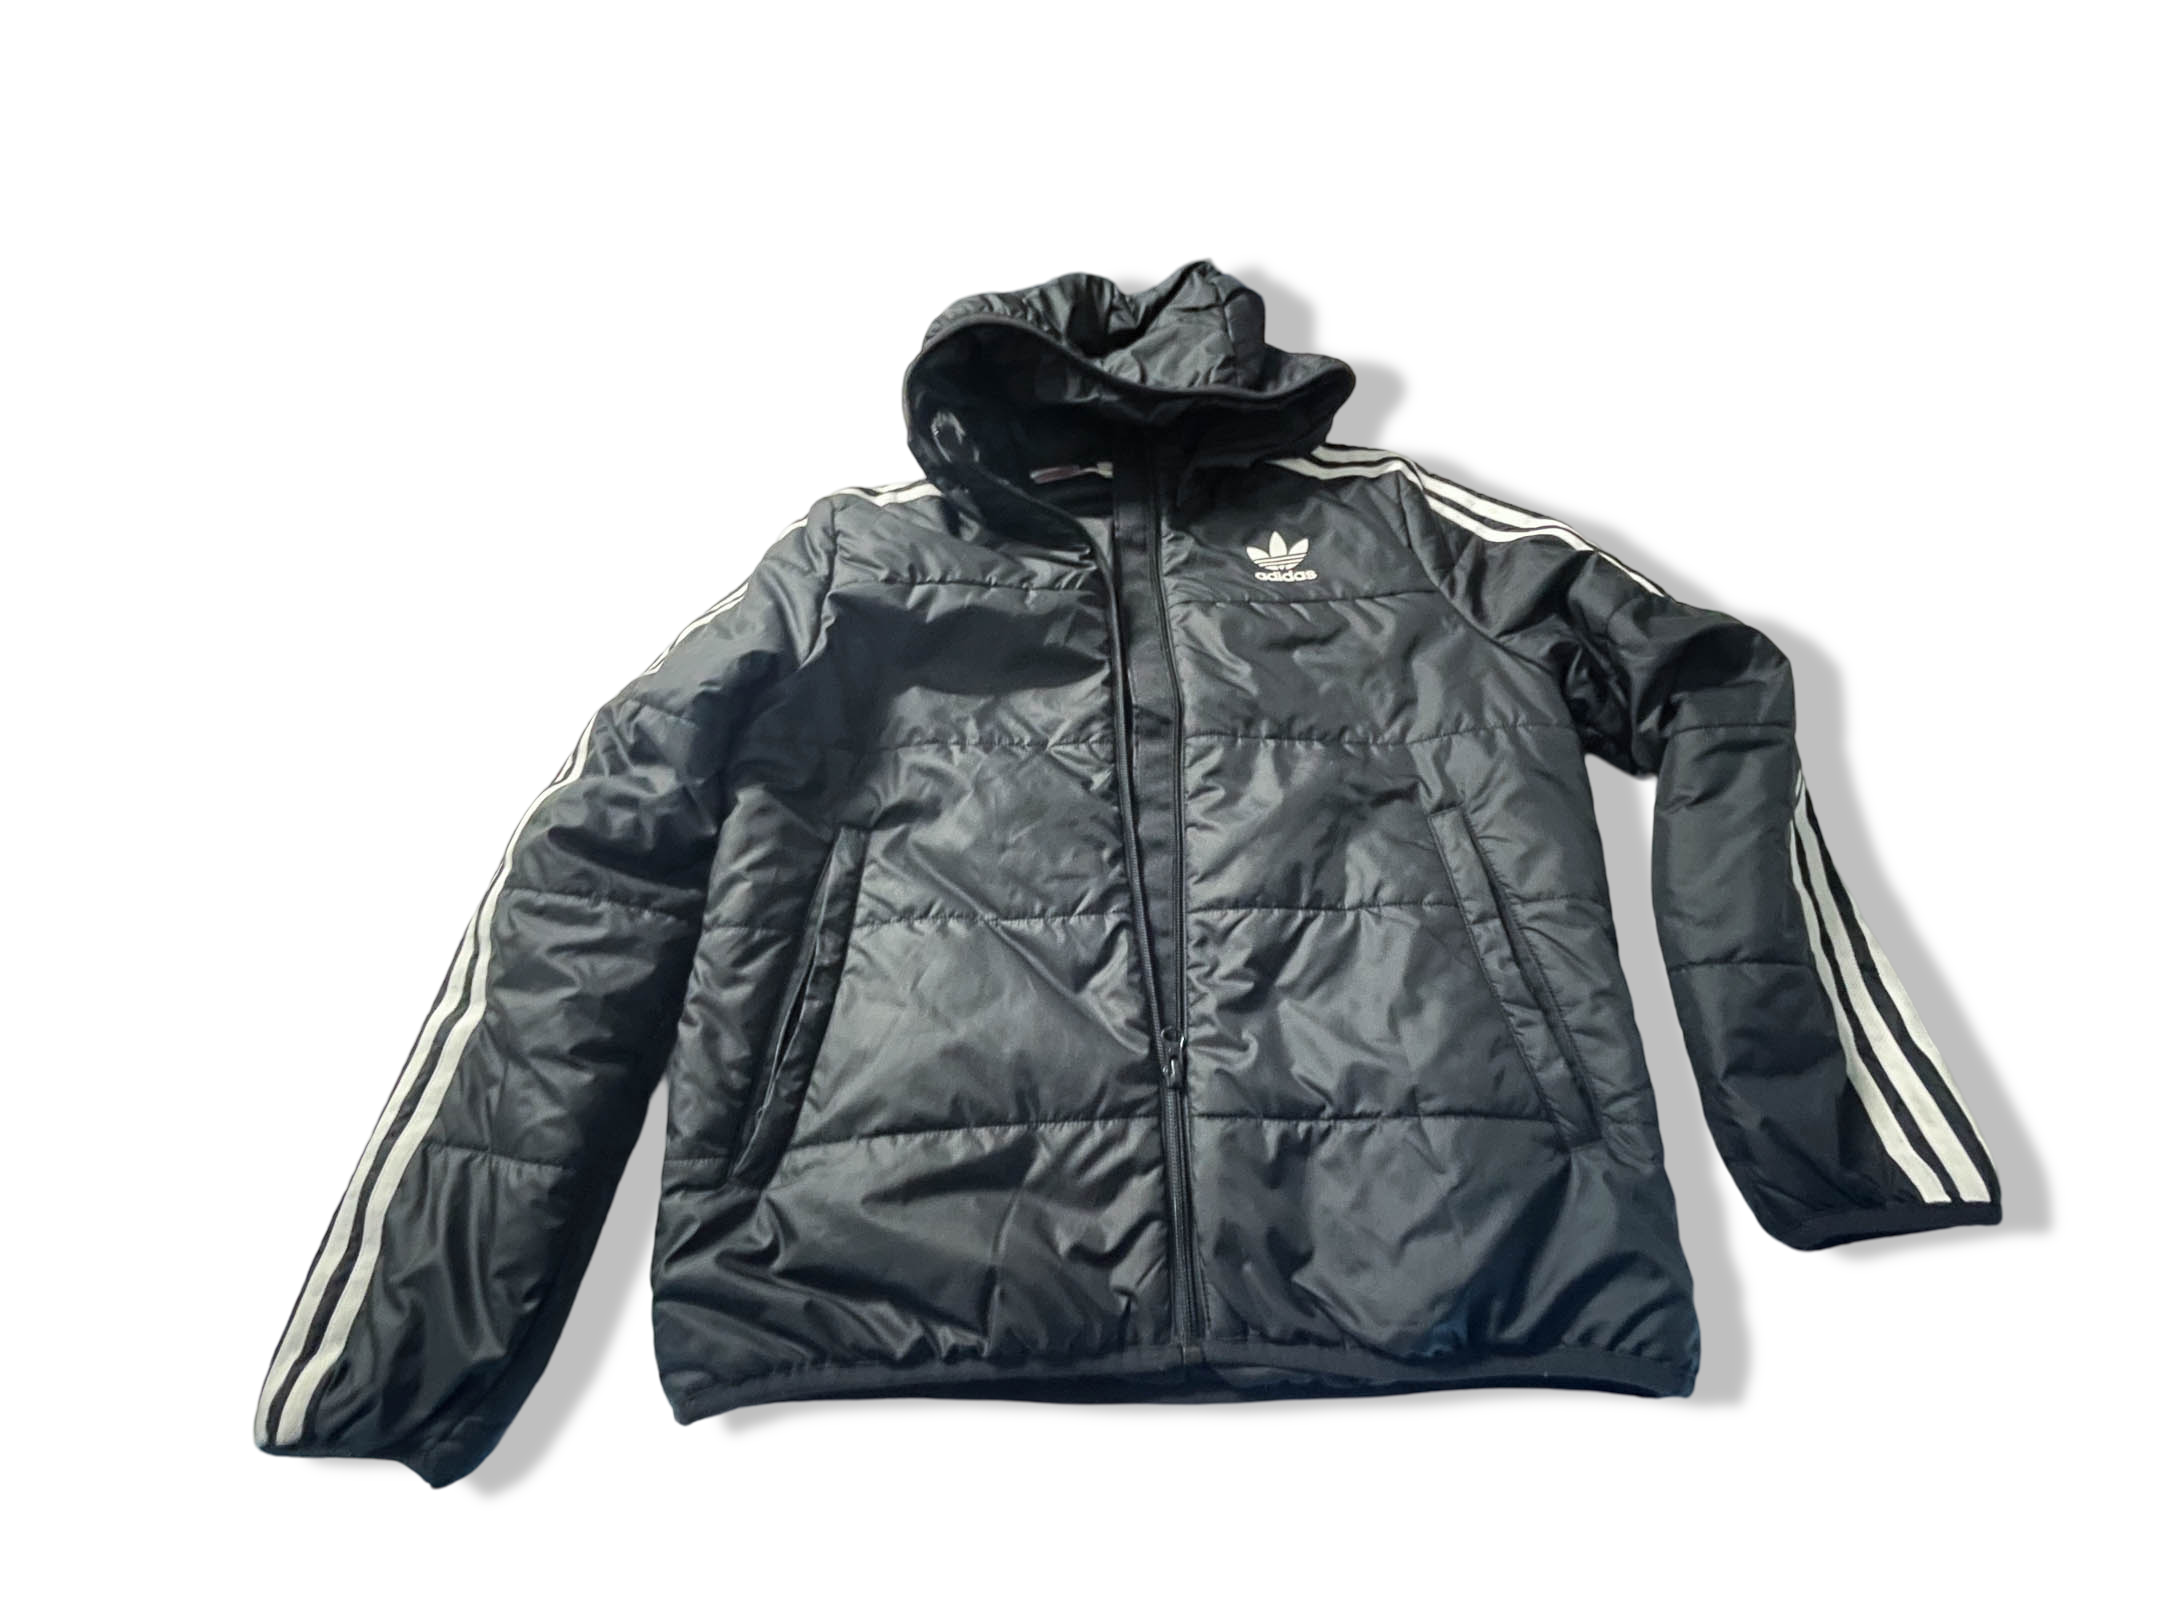 Vintage Women's Adidas adicolor black full zip puffer hoodie jacket in S|L24 W20|SKU 4025